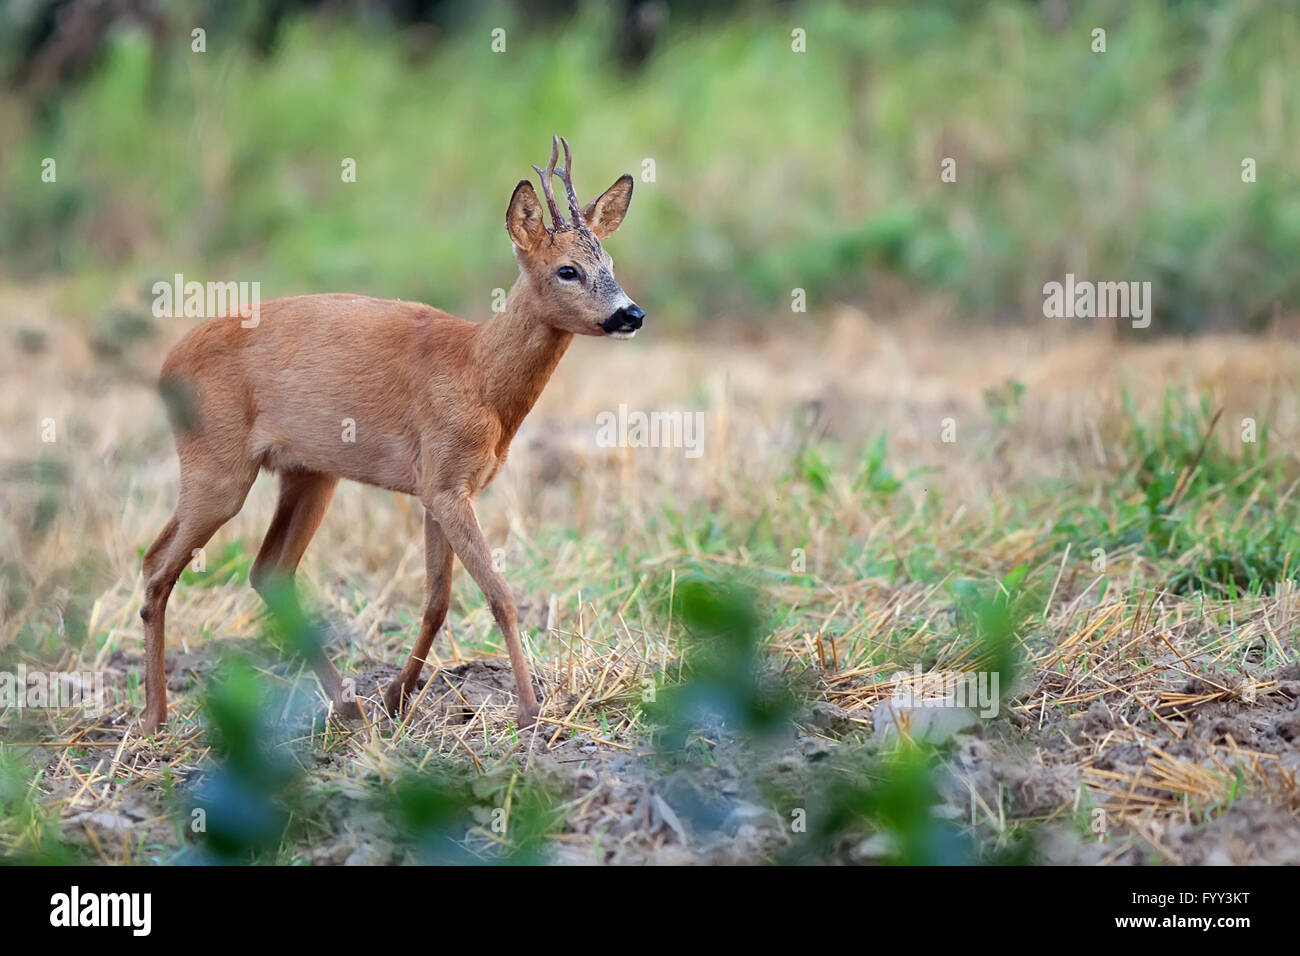 Buck deer in the wild Stock Photo